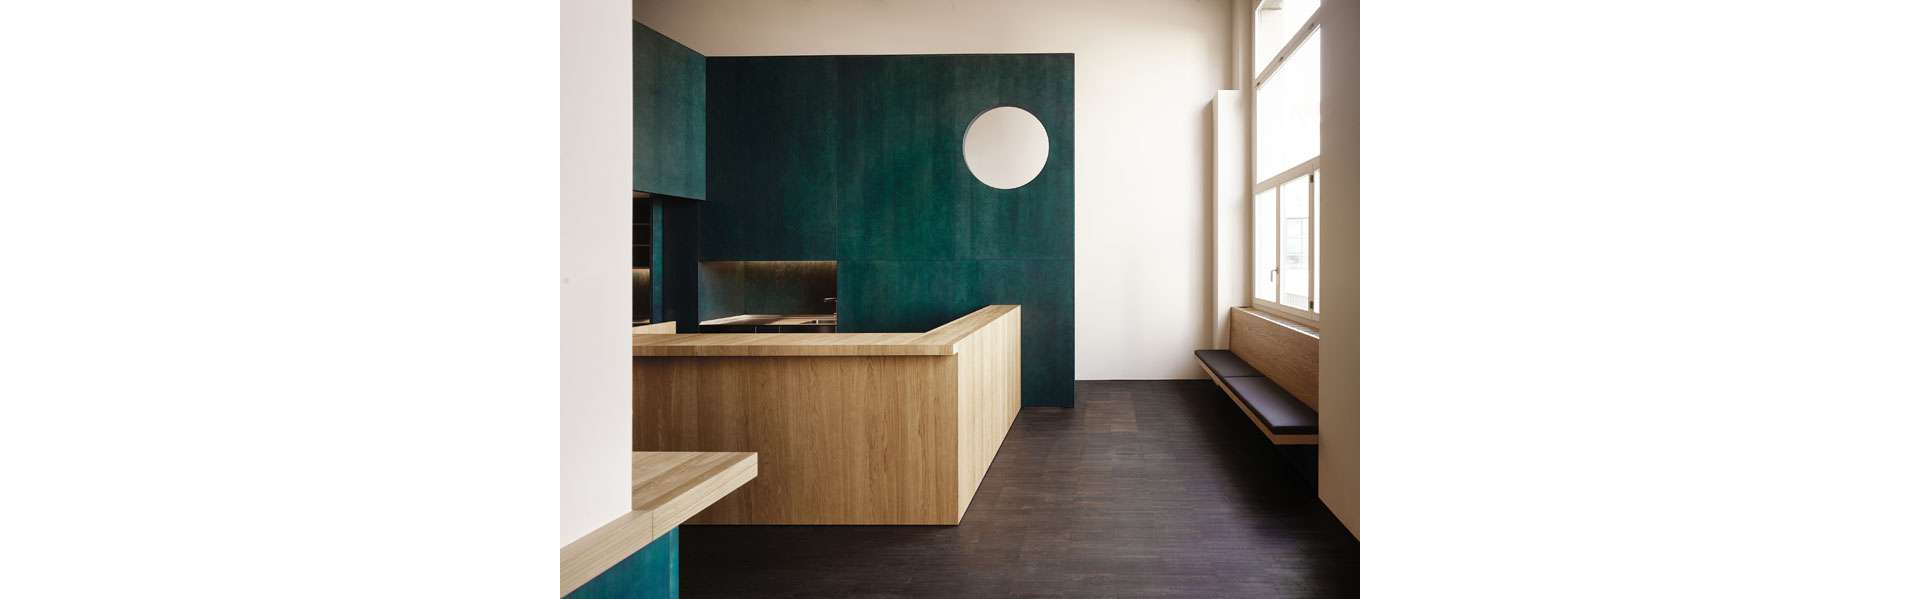 Ein hochwertiger Holzbau aus grün lasiertem Sperrholz begleitet den Nutzer durch den Raum.